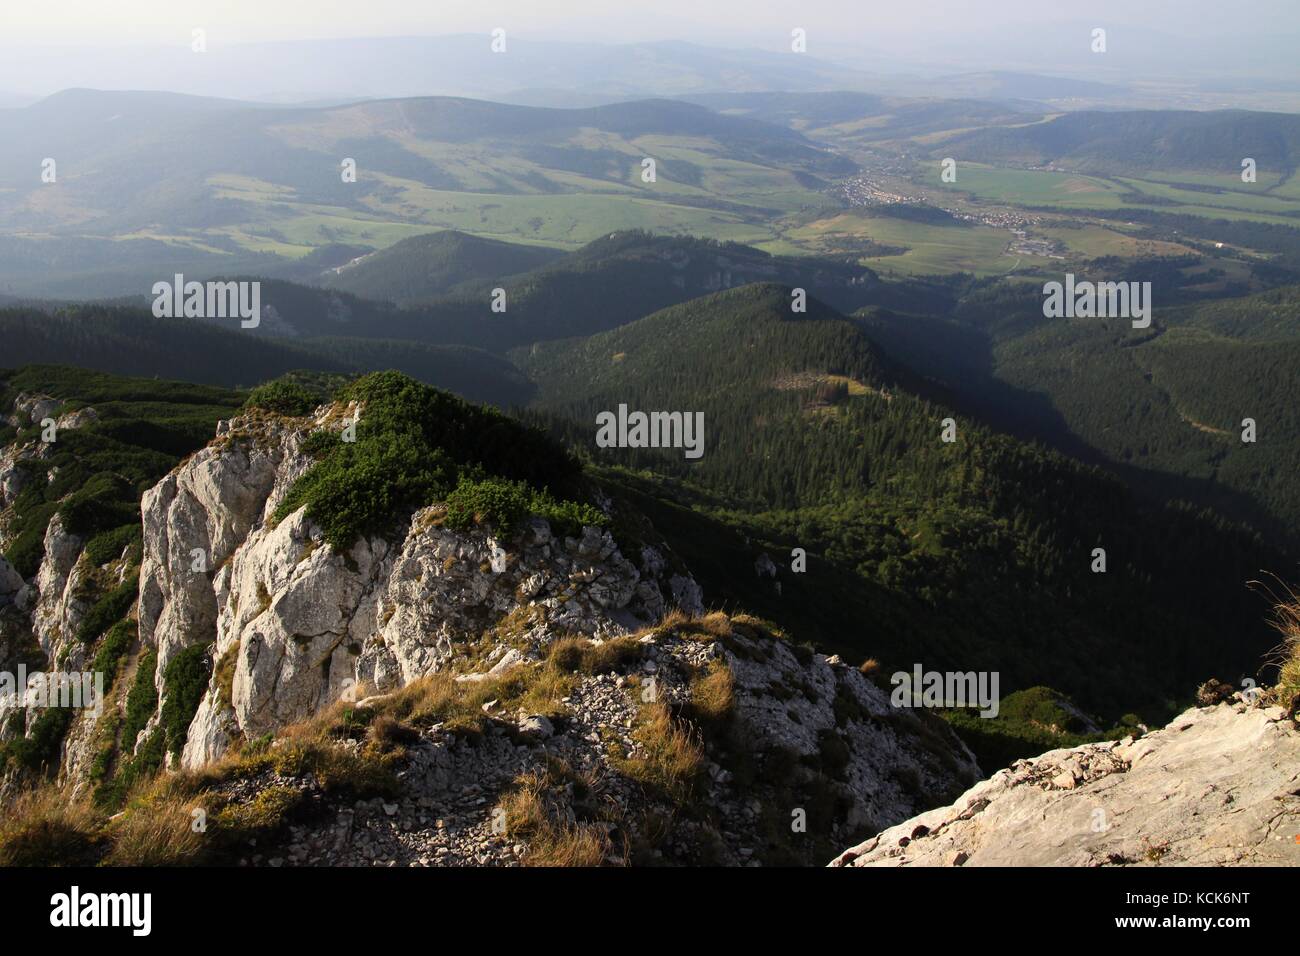 Vista desde Sivy vrch en Zuberec, montañas Tatra, Eslovaquia Foto de stock